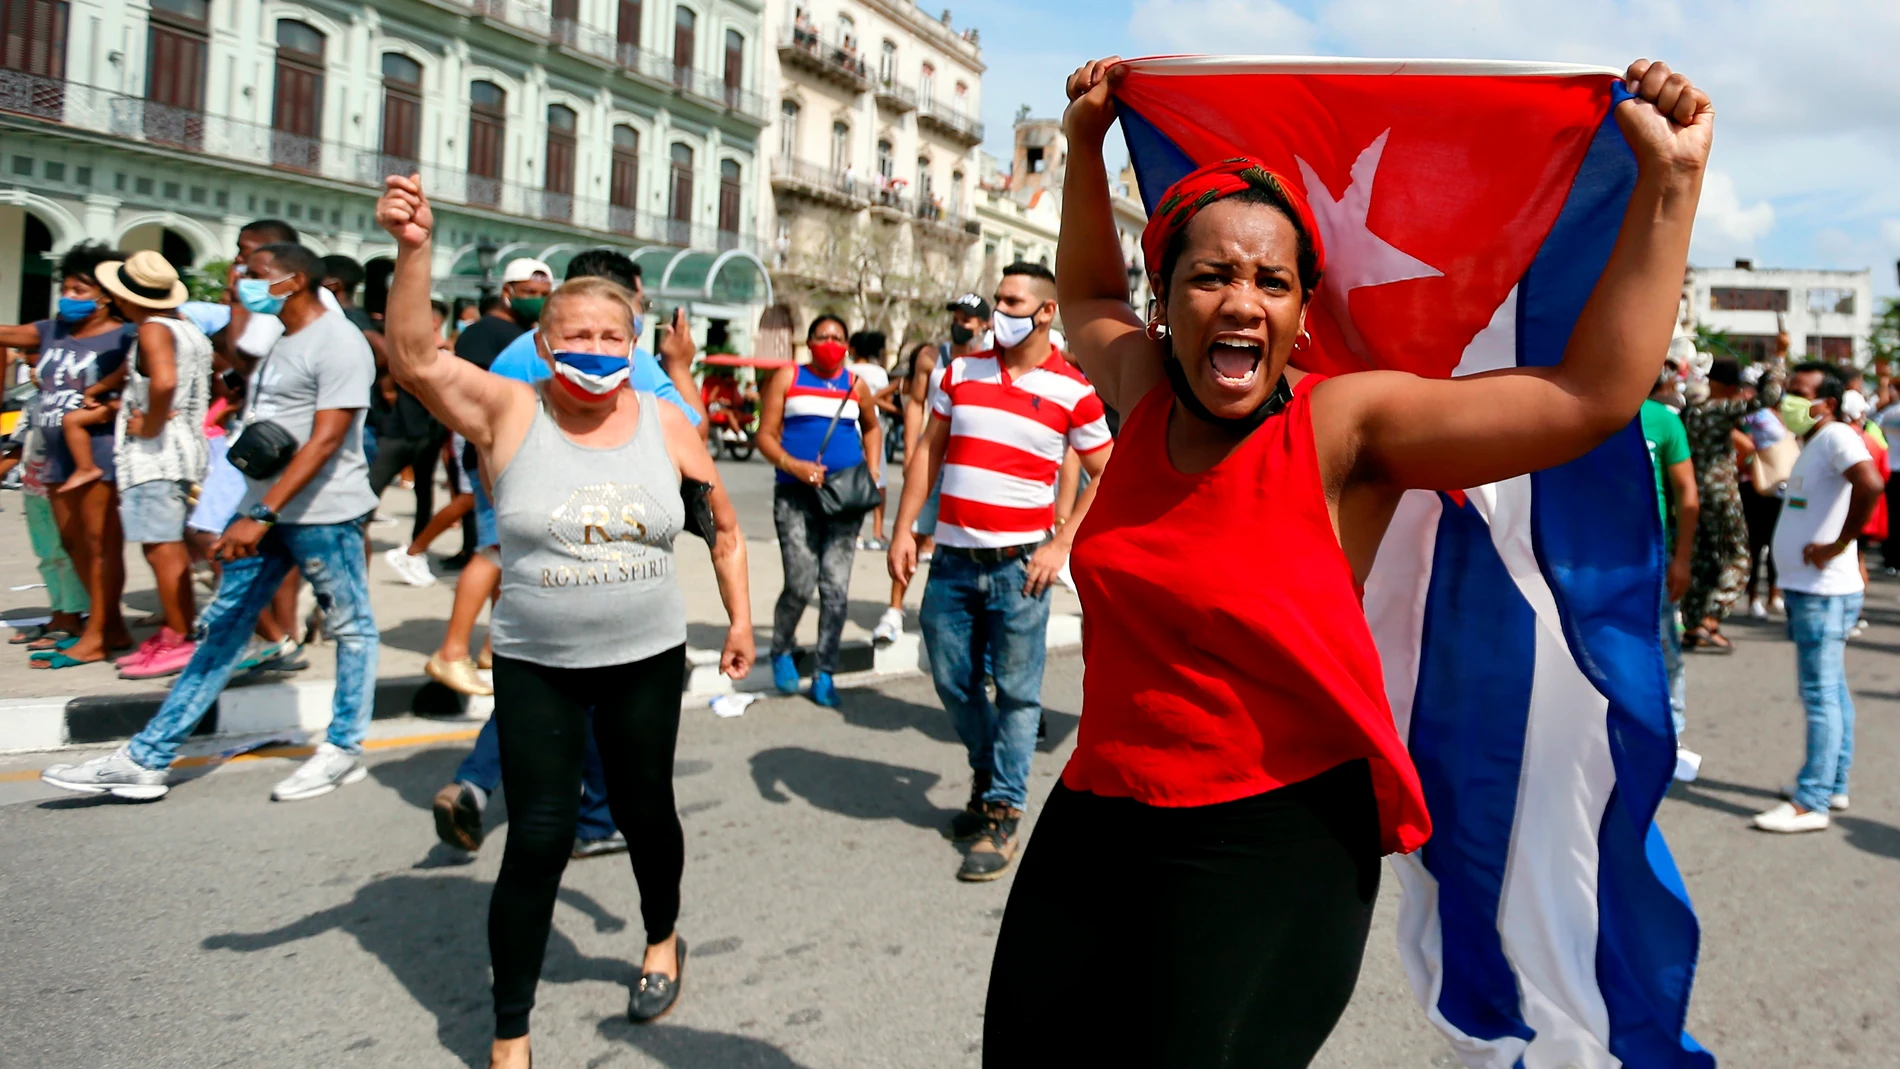 FOTODELDÍA-HAB15. LA HABANA (CUBA), 11/07/2021.- Personas manifiestan su apoyo al gobierno cubano hoy, en una calle en La Habana (Cuba)- Cientos de cubanos salieron este domingo a las calles de La Habana al grito de "libertad" en manifestaciones pacíficas, que fueron interceptadas por las fuerzas de seguridad y brigadas de partidarios del Gobierno, produciéndose enfrentamientos violentos y arrestos. EFE/Ernesto Mastrascusa